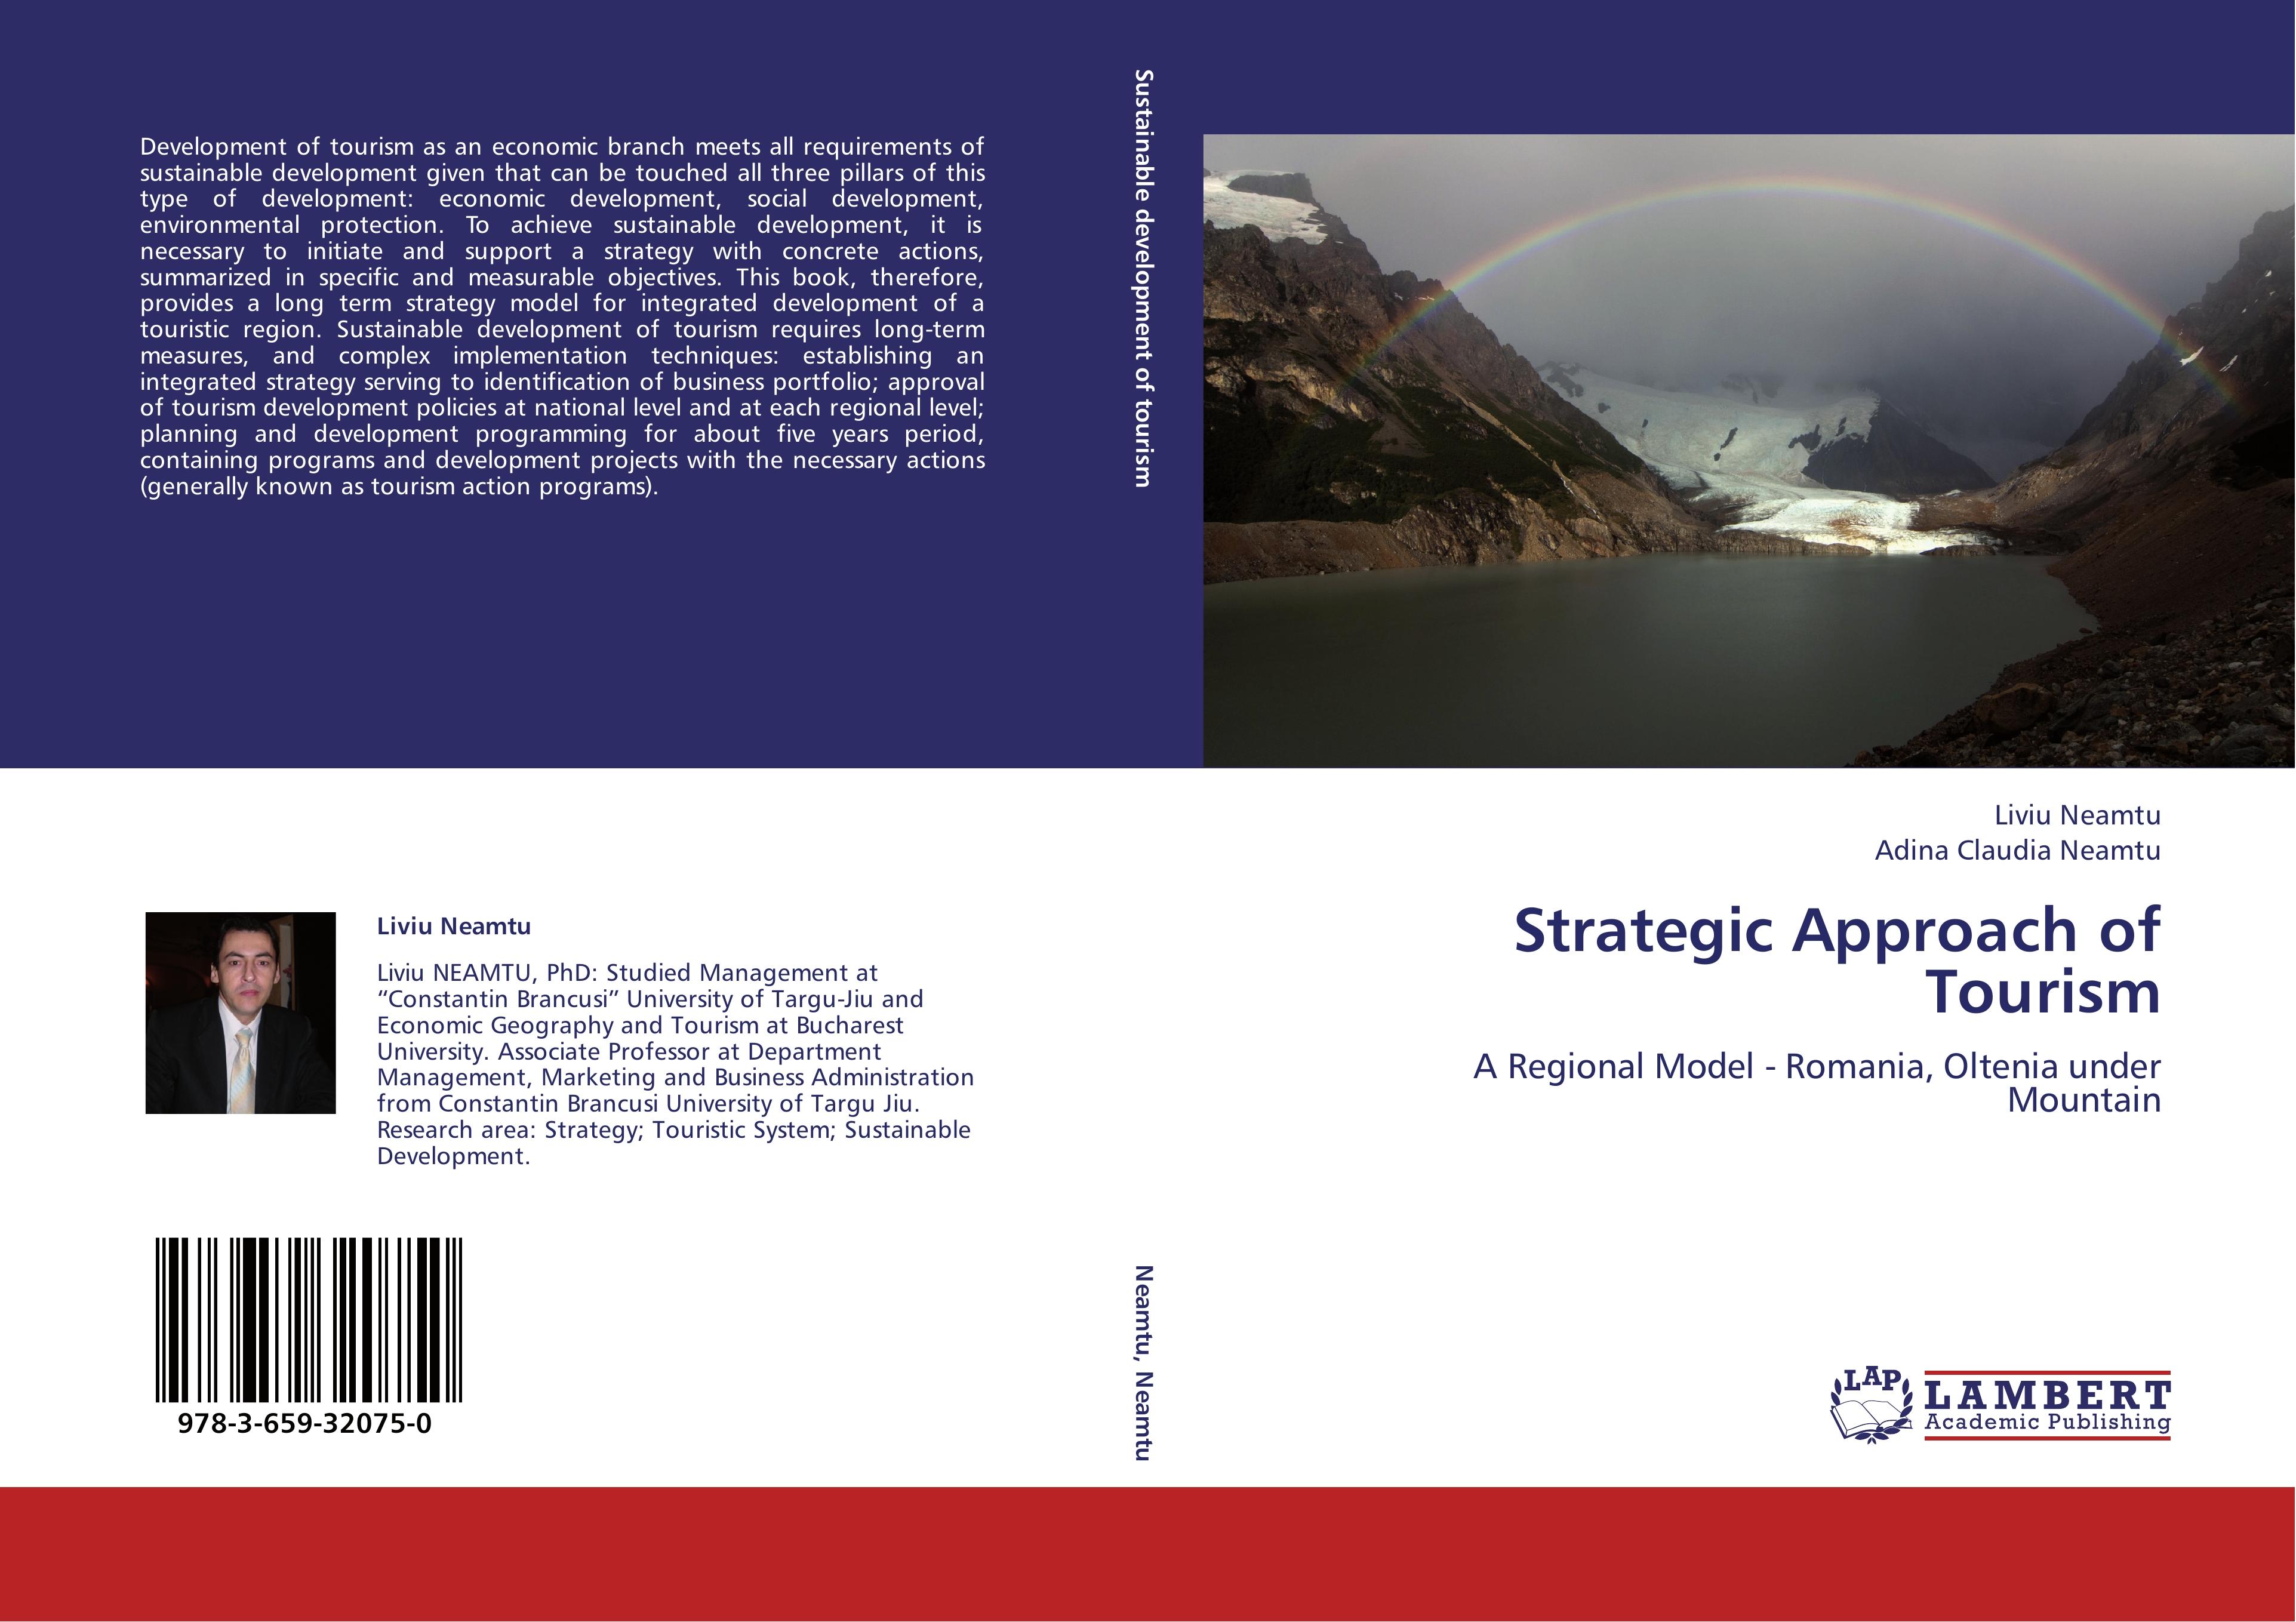 Strategic Approach of Tourism - Liviu Neamtu|Adina Claudia Neamtu